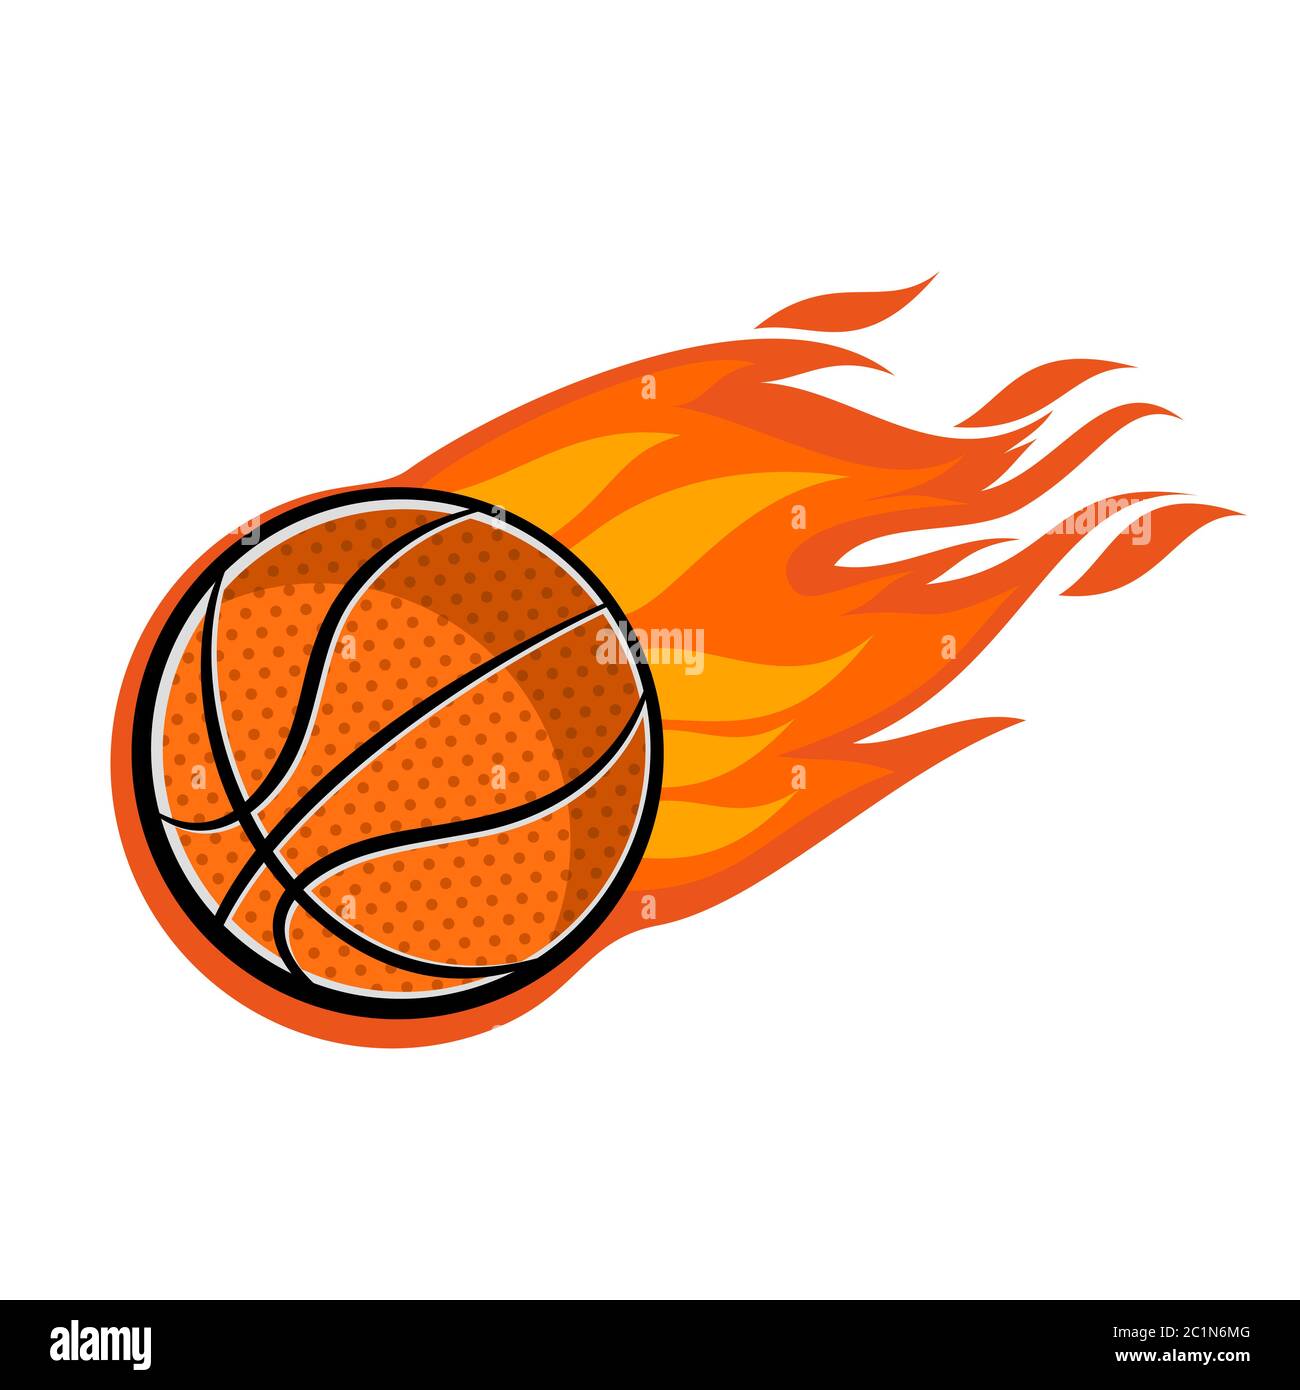 illustrazione di una palla da basket in rapida evoluzione. Icona di una palla da basket con fiamme e l'impressione di velocità. Illustrazione Vettoriale